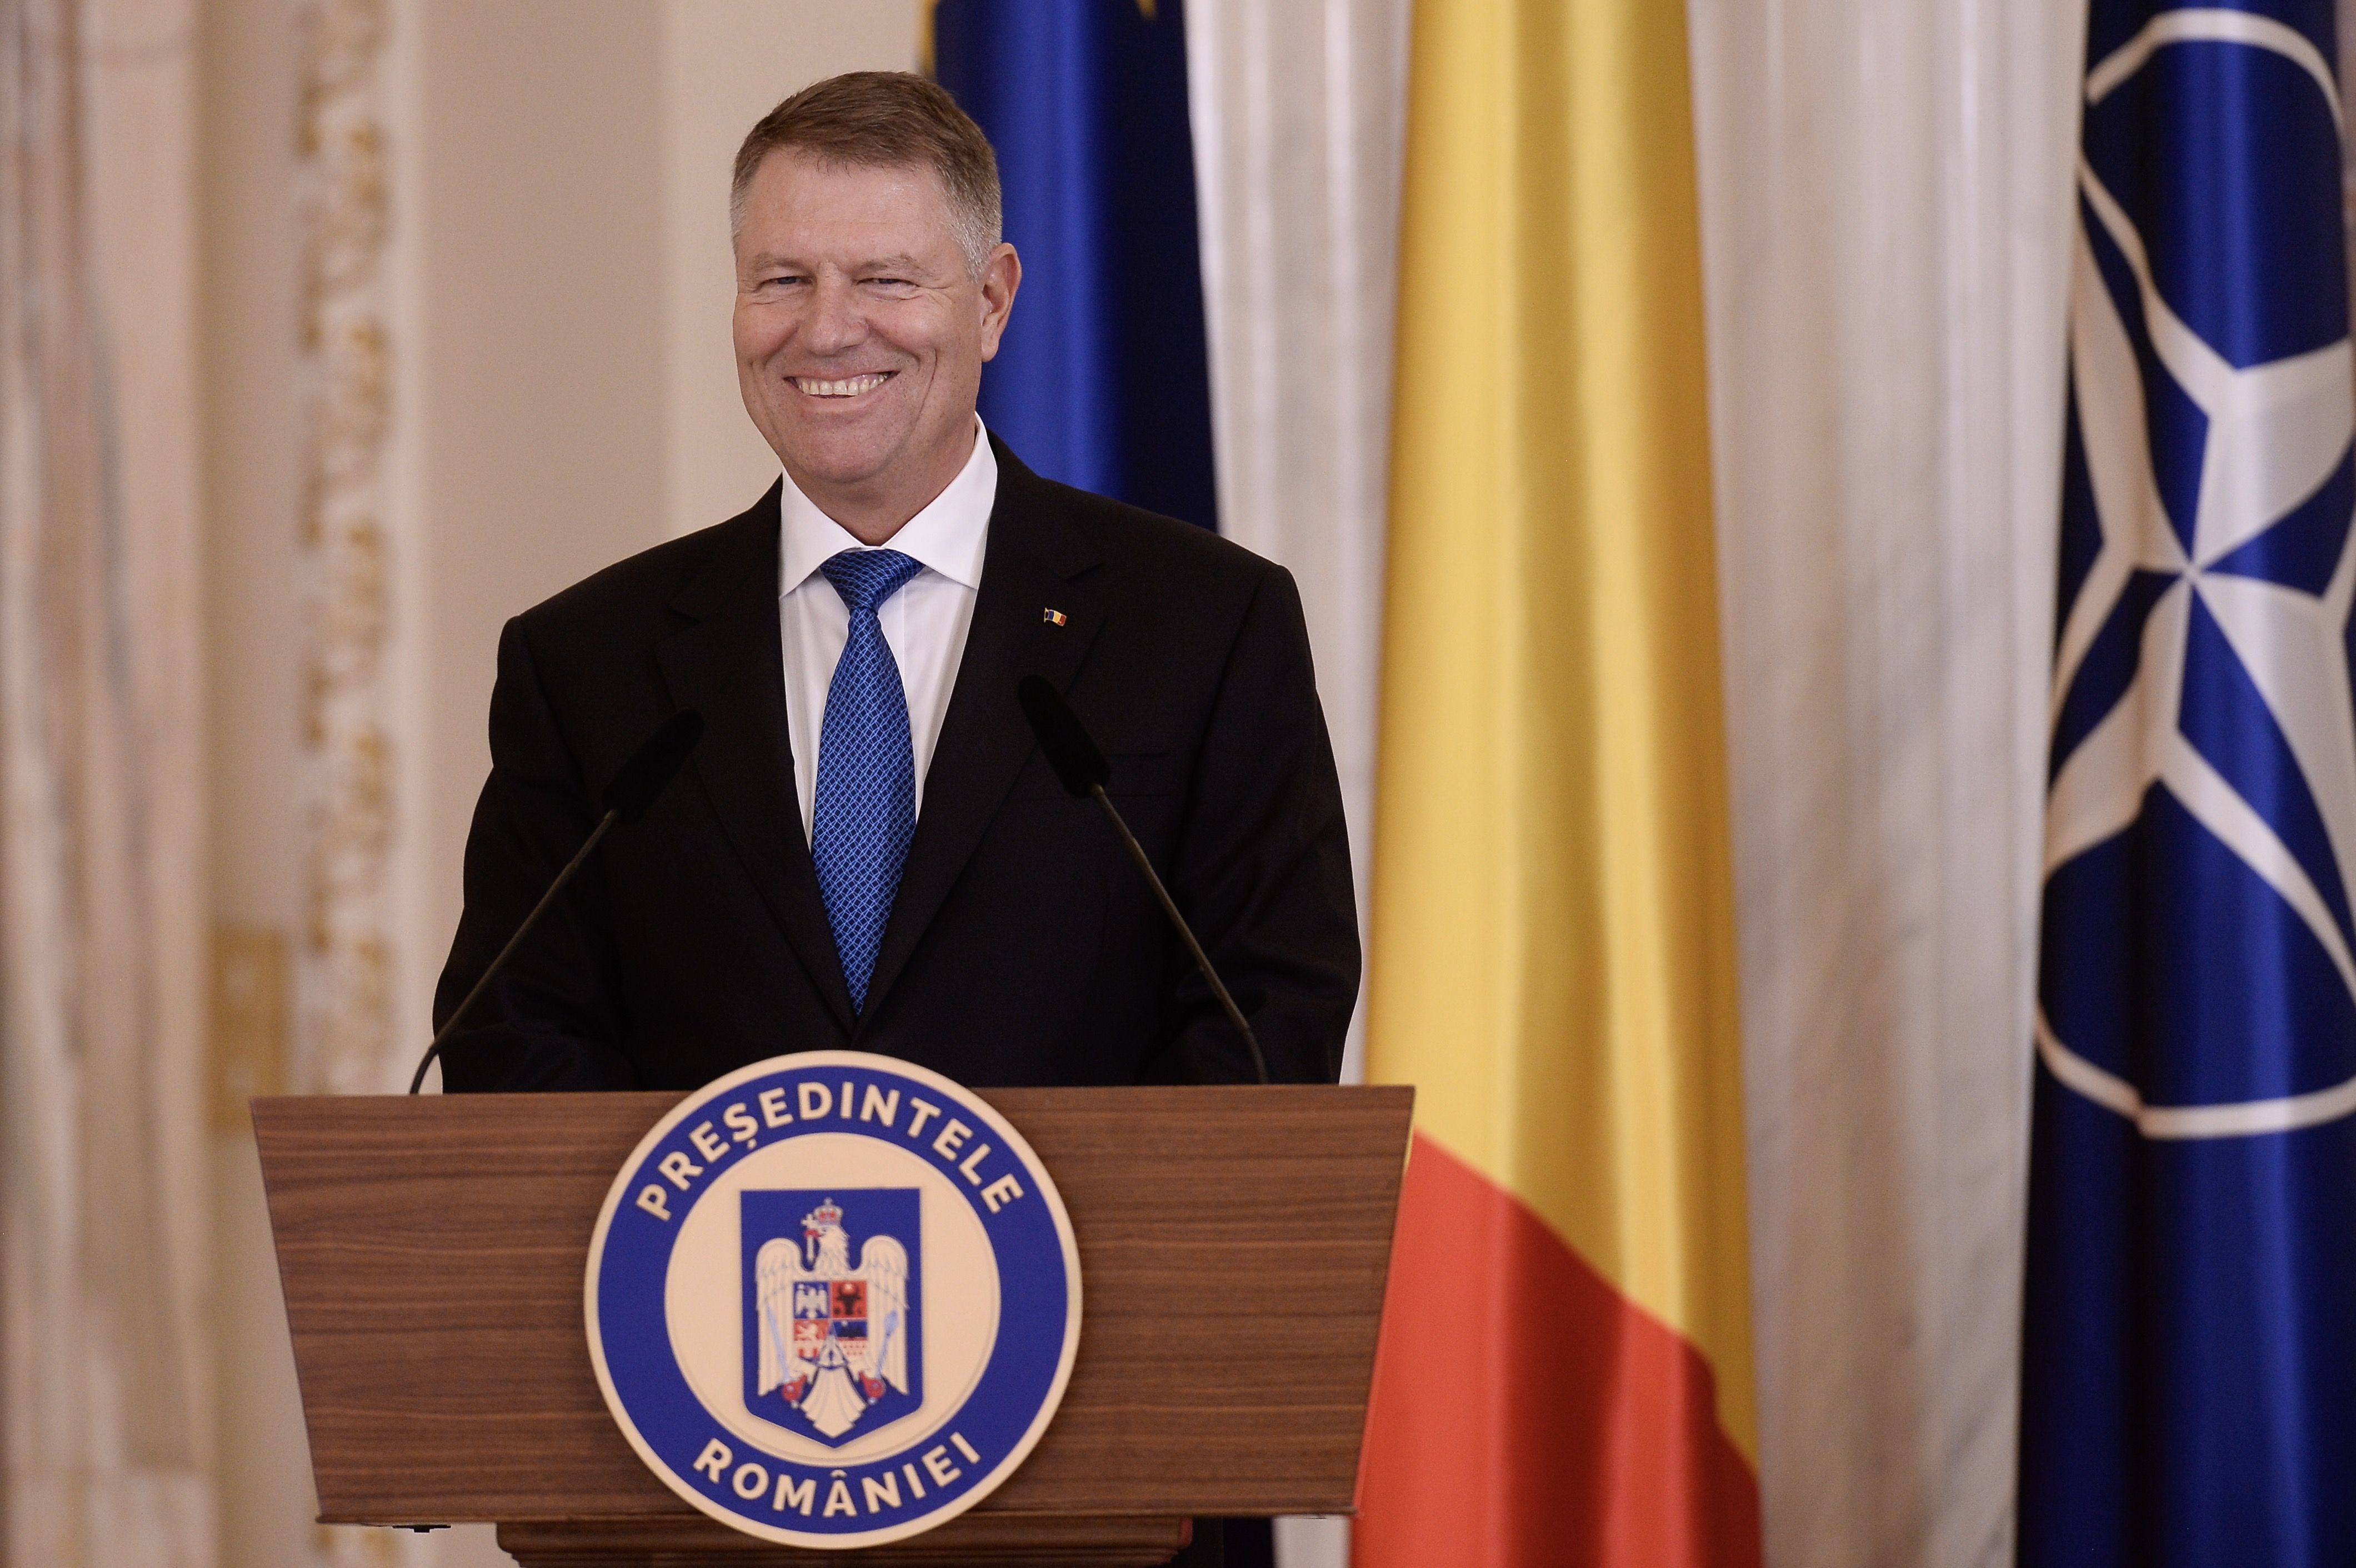 Preşedintele Klaus Iohannis a promulgat legea privind emiterea de monedă electronică. Instituţille care emit criptomonede vor fi autorizate şi supravegheate